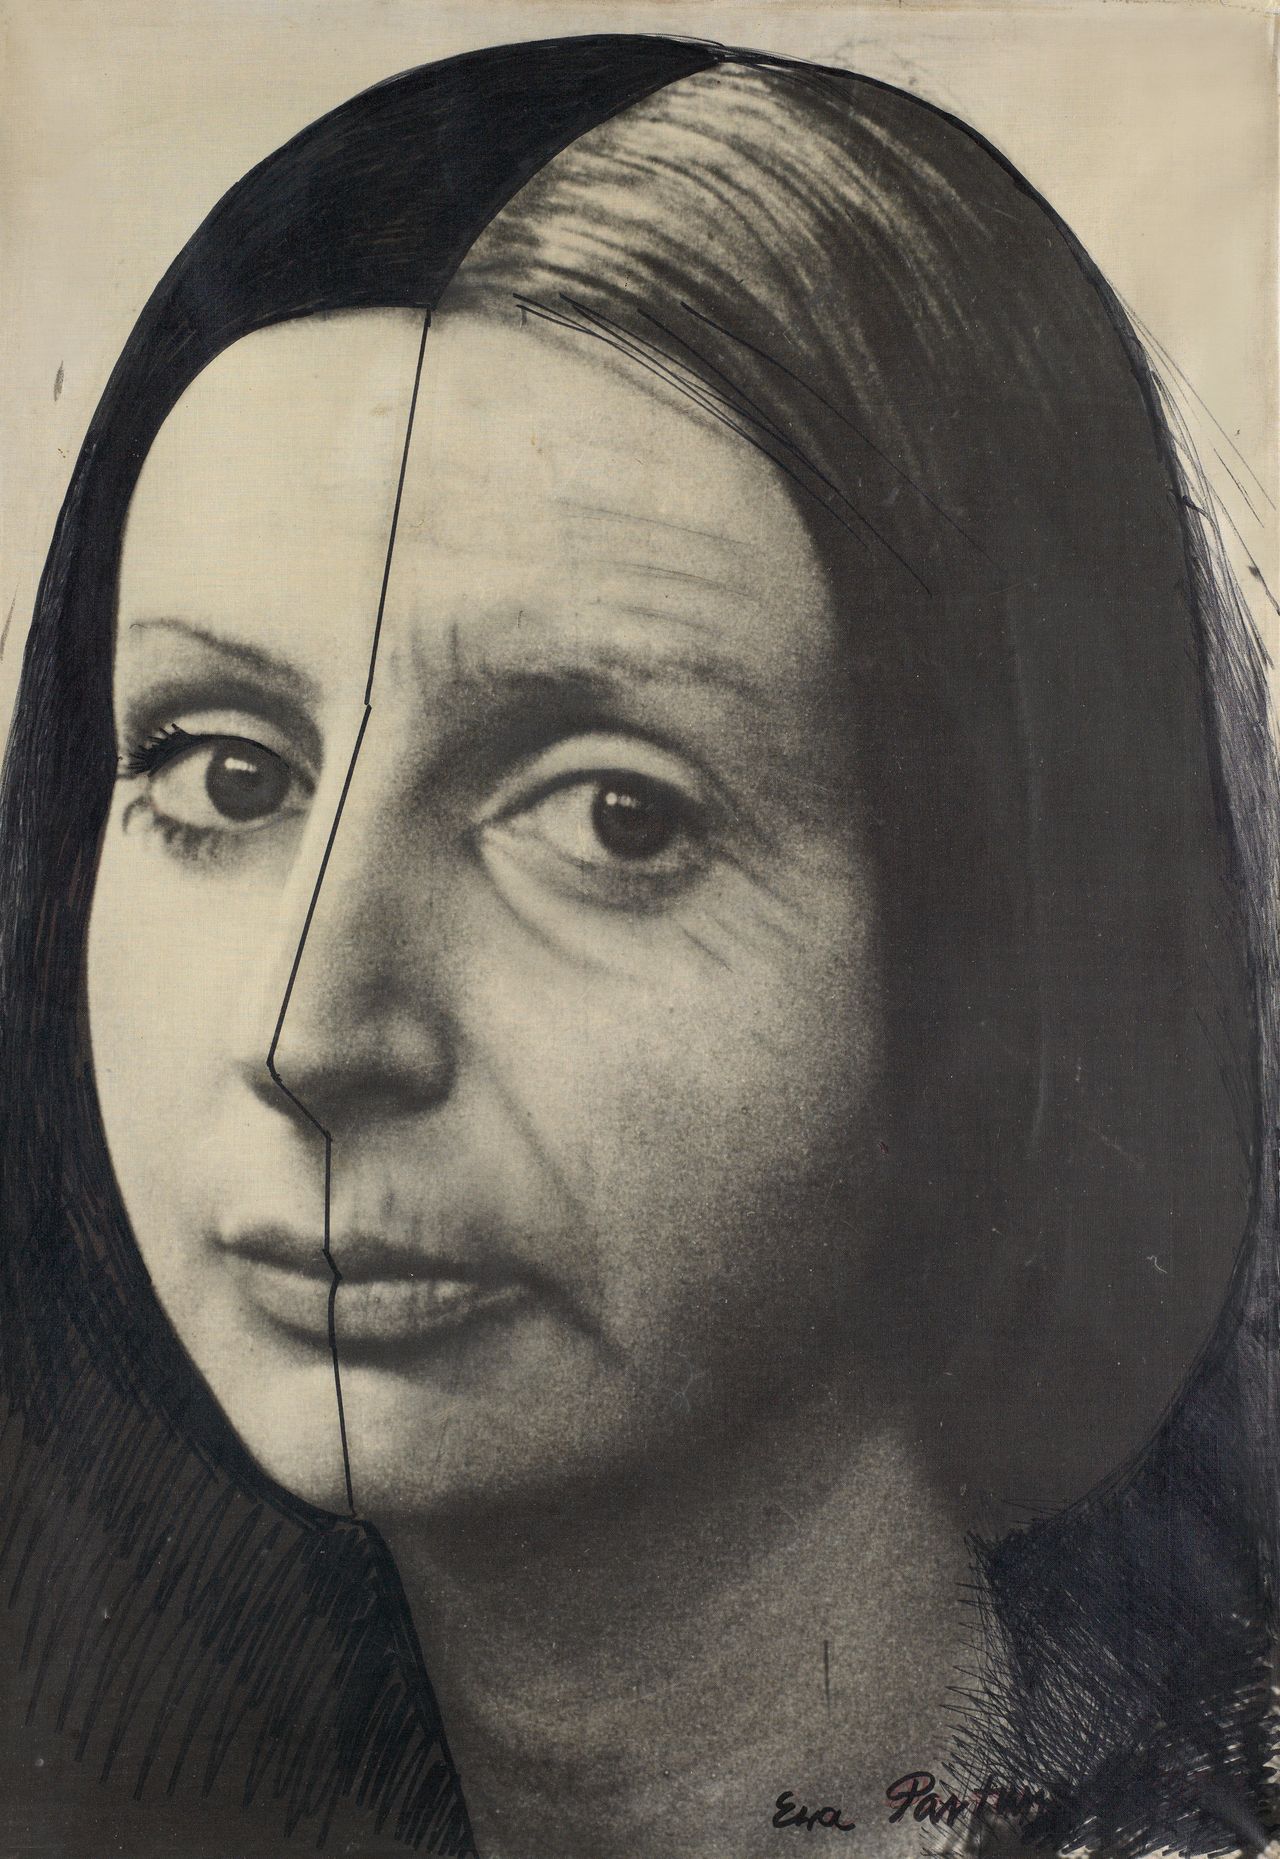 Ewa Partum, "Change," 1974